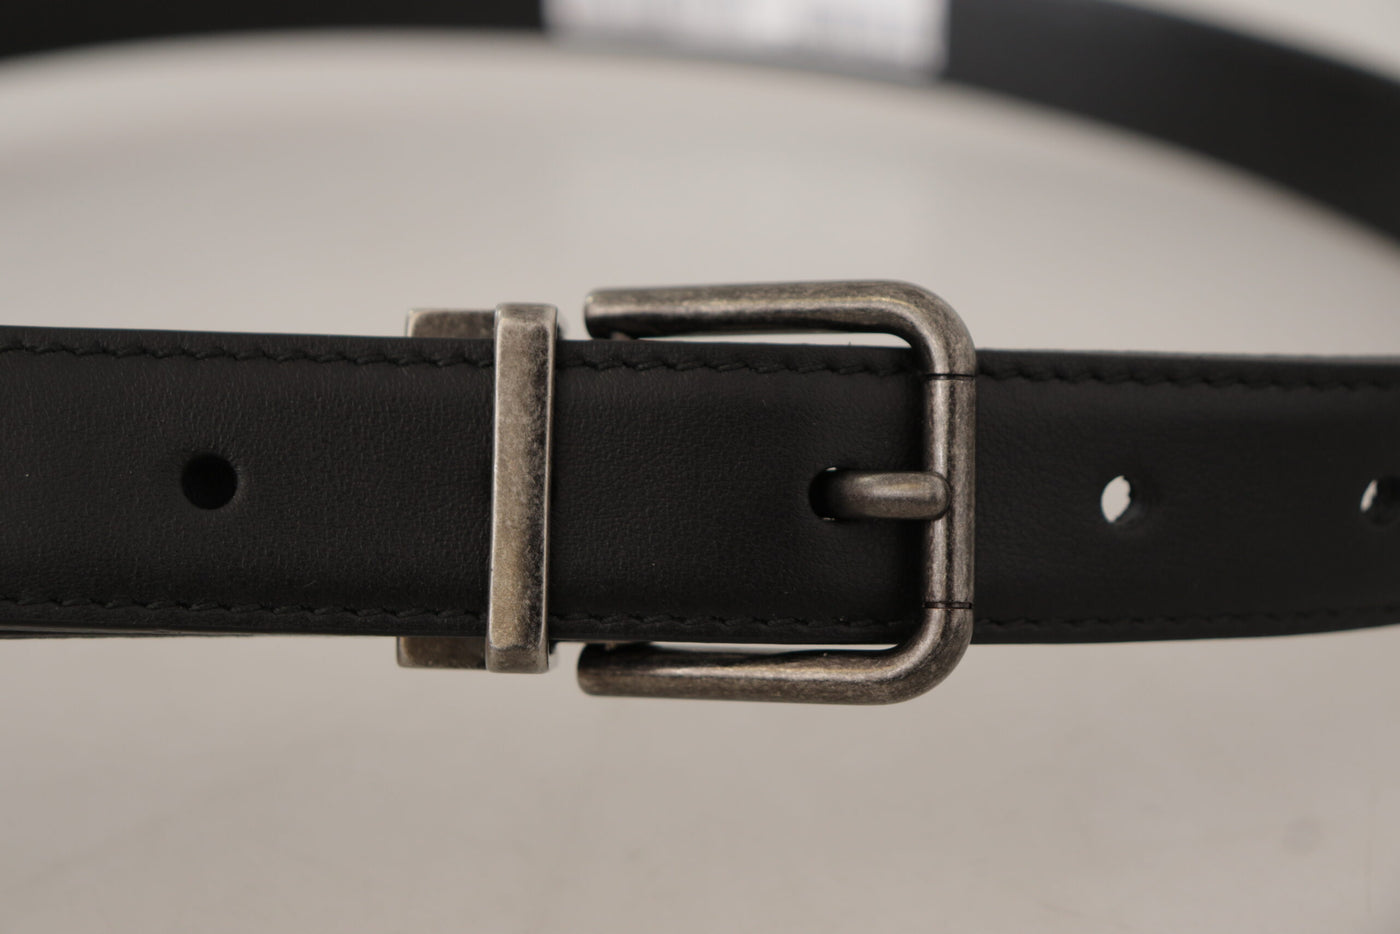 Dolce & Gabbana Black Plain Leather Vintage Logo Metal Buckle Belt